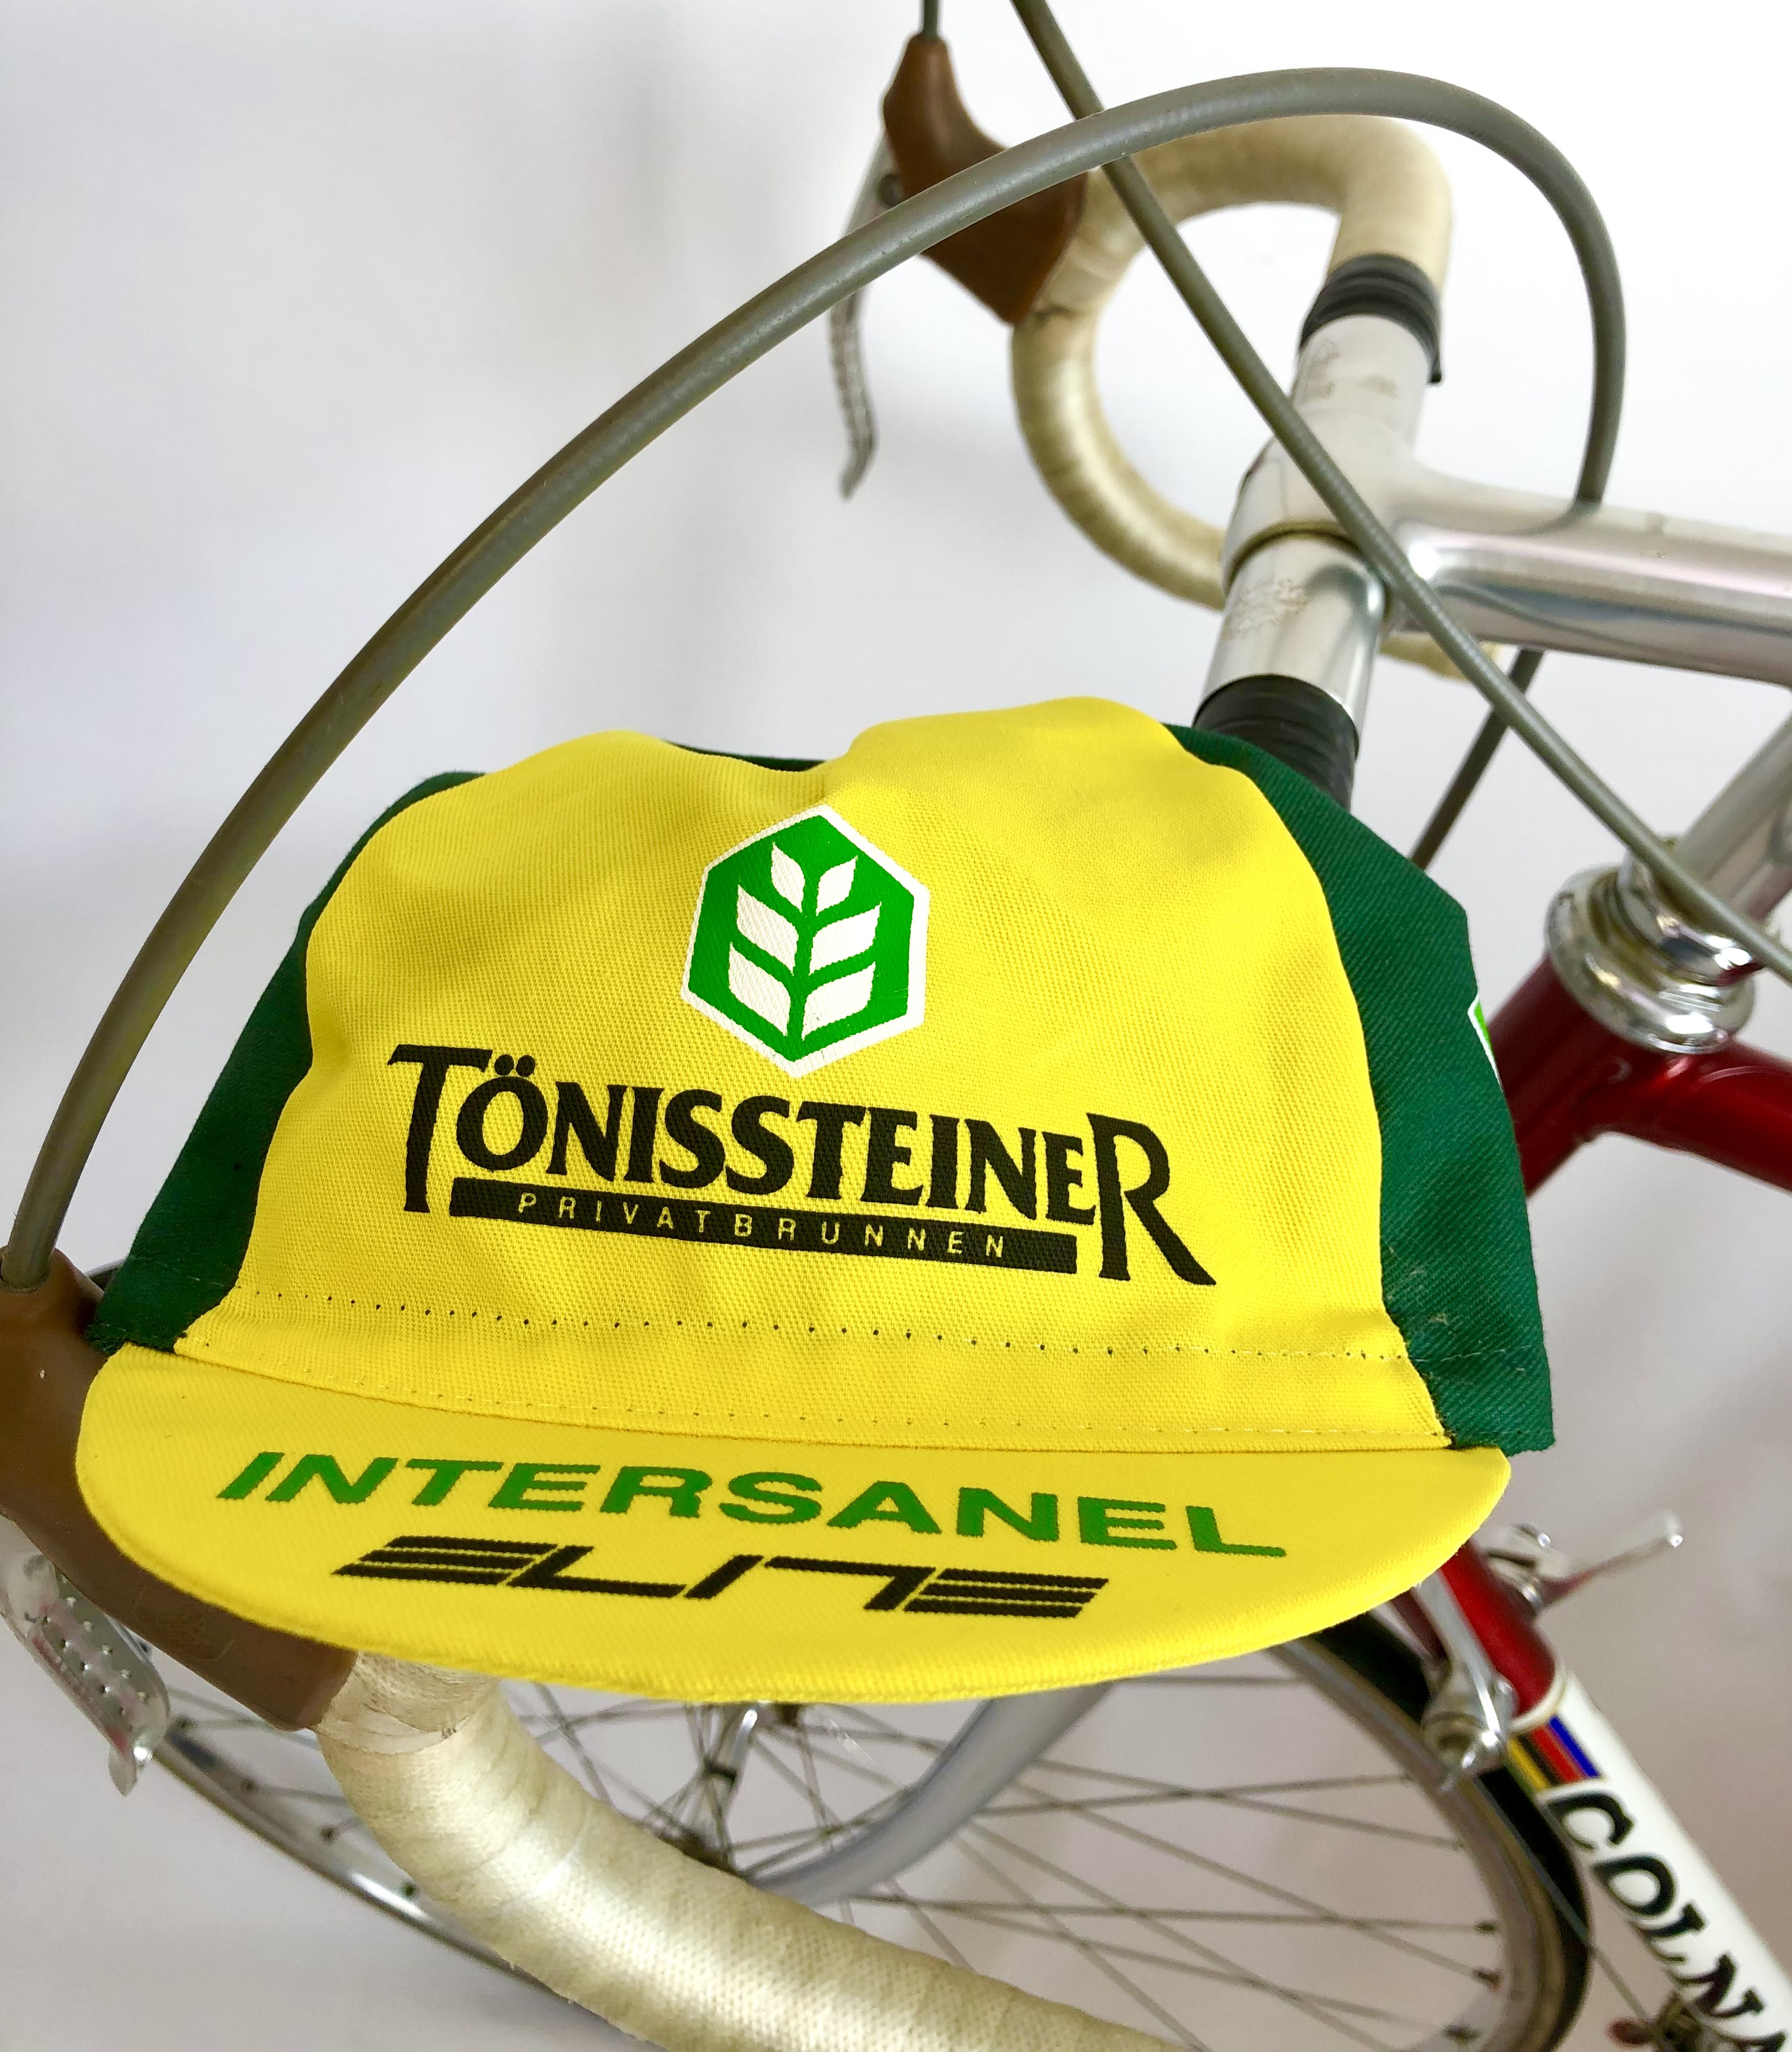 La Casquette Team Tönissteiner - Intersanel